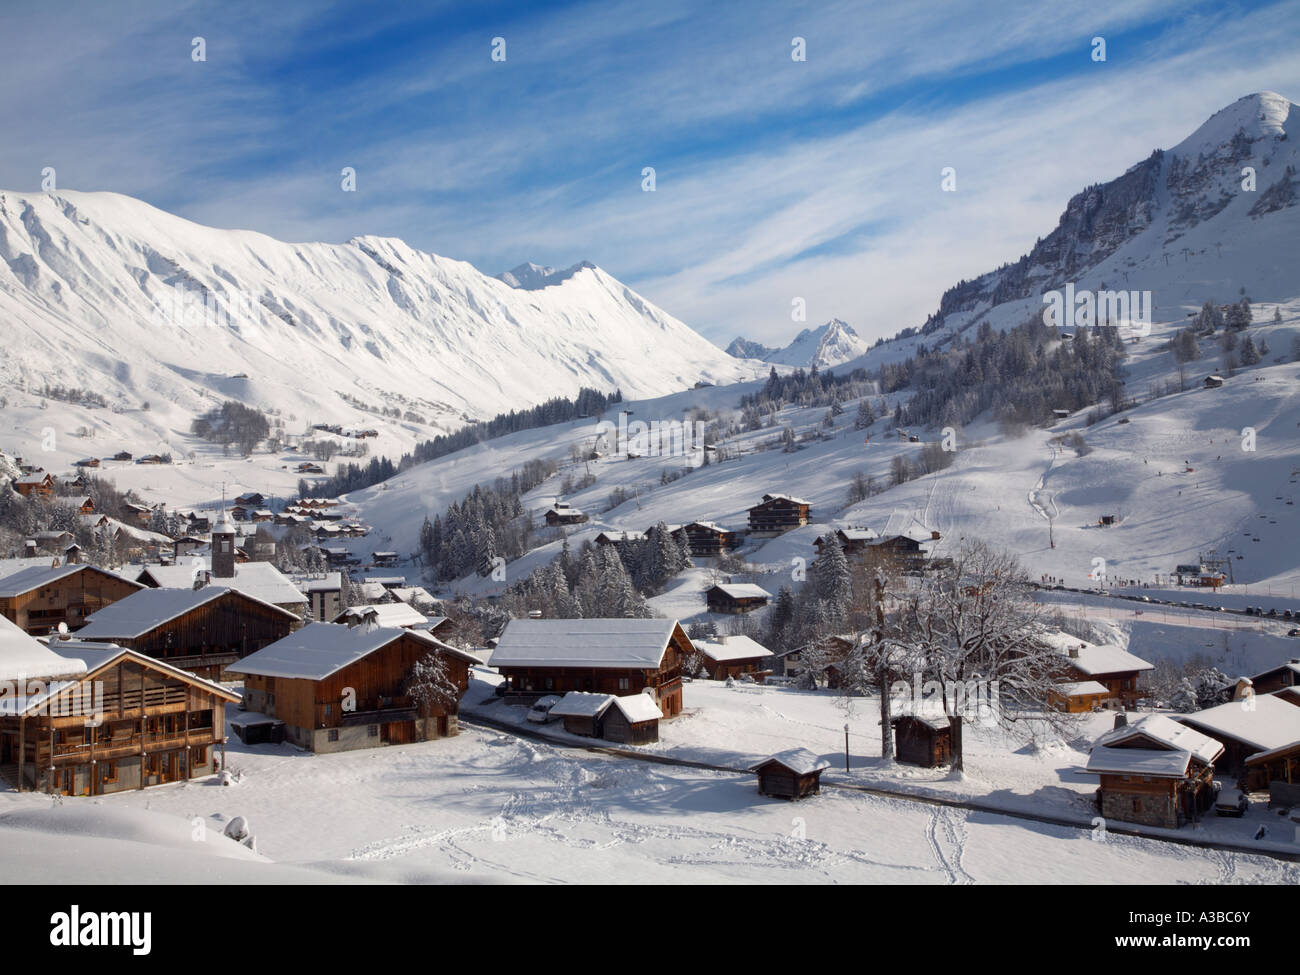 Le Chinaillon l'hiver à la station de ski Le Grand Bornand Haute Savoie France Banque D'Images